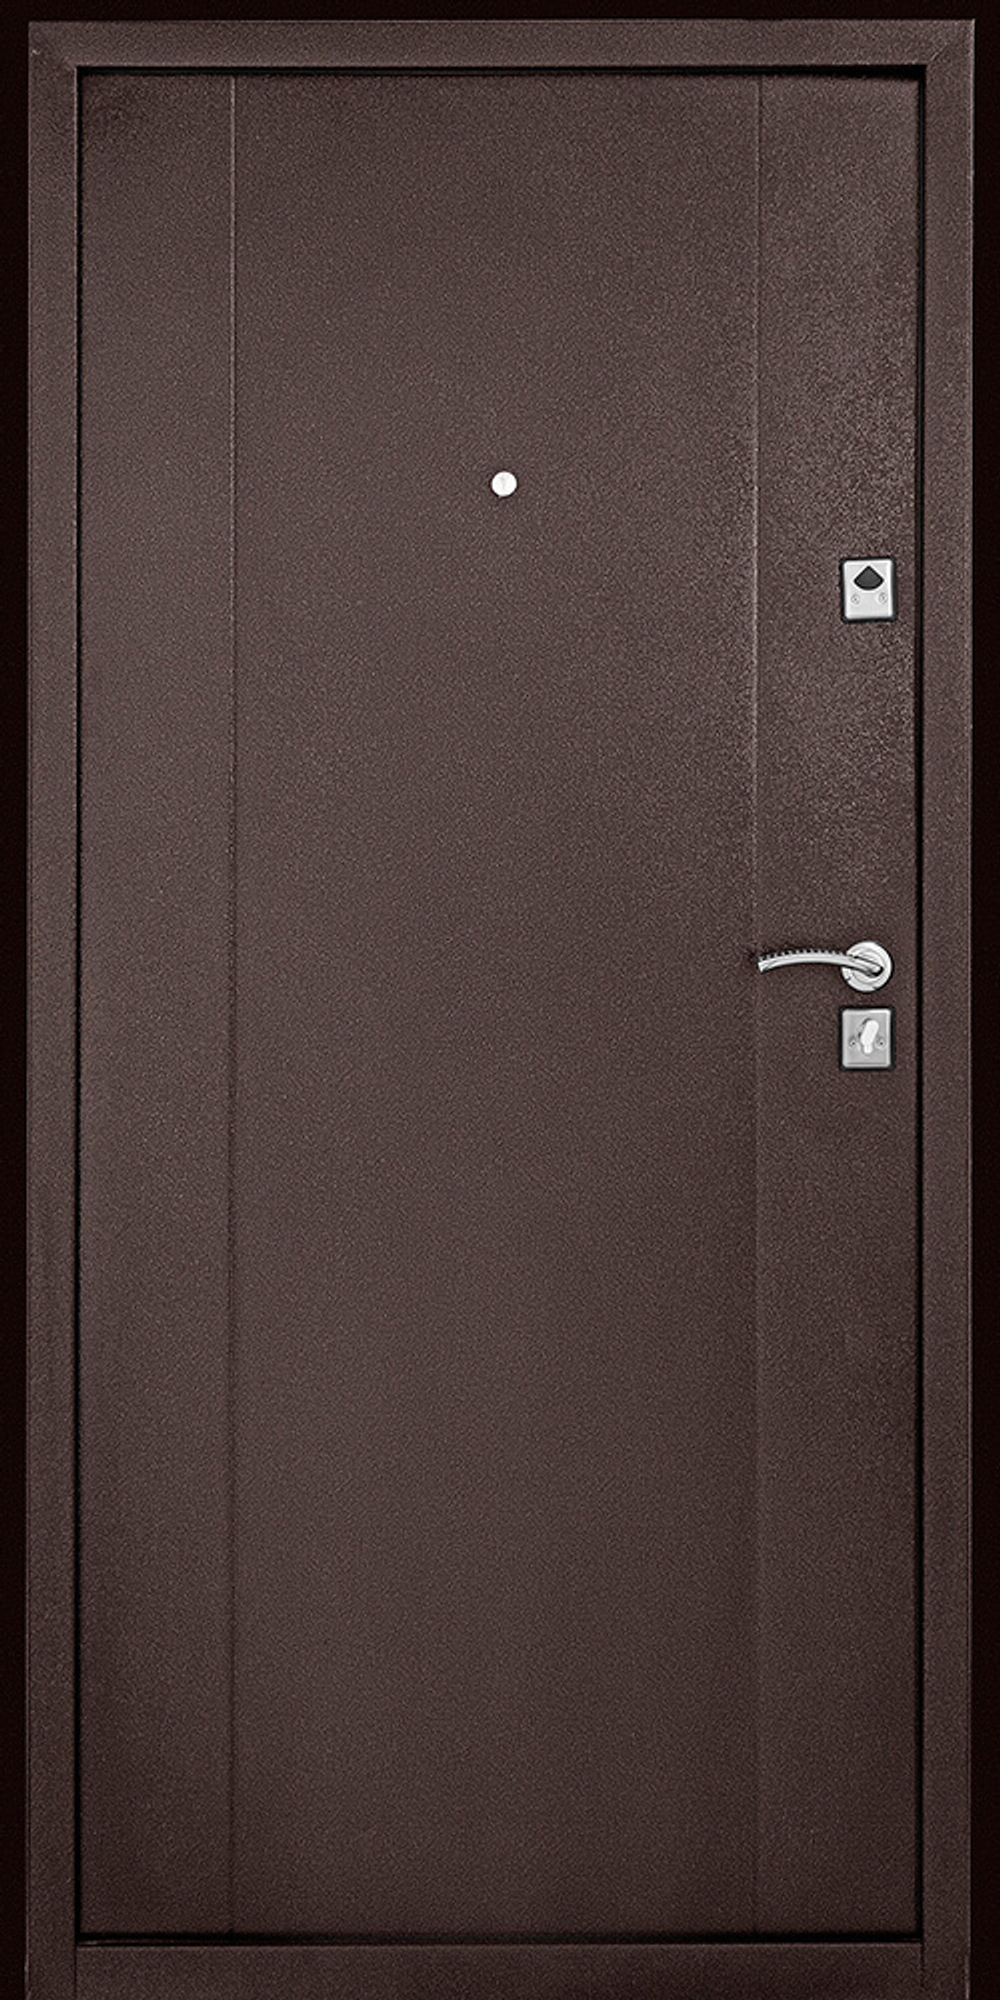 Входная дверь Модель 72